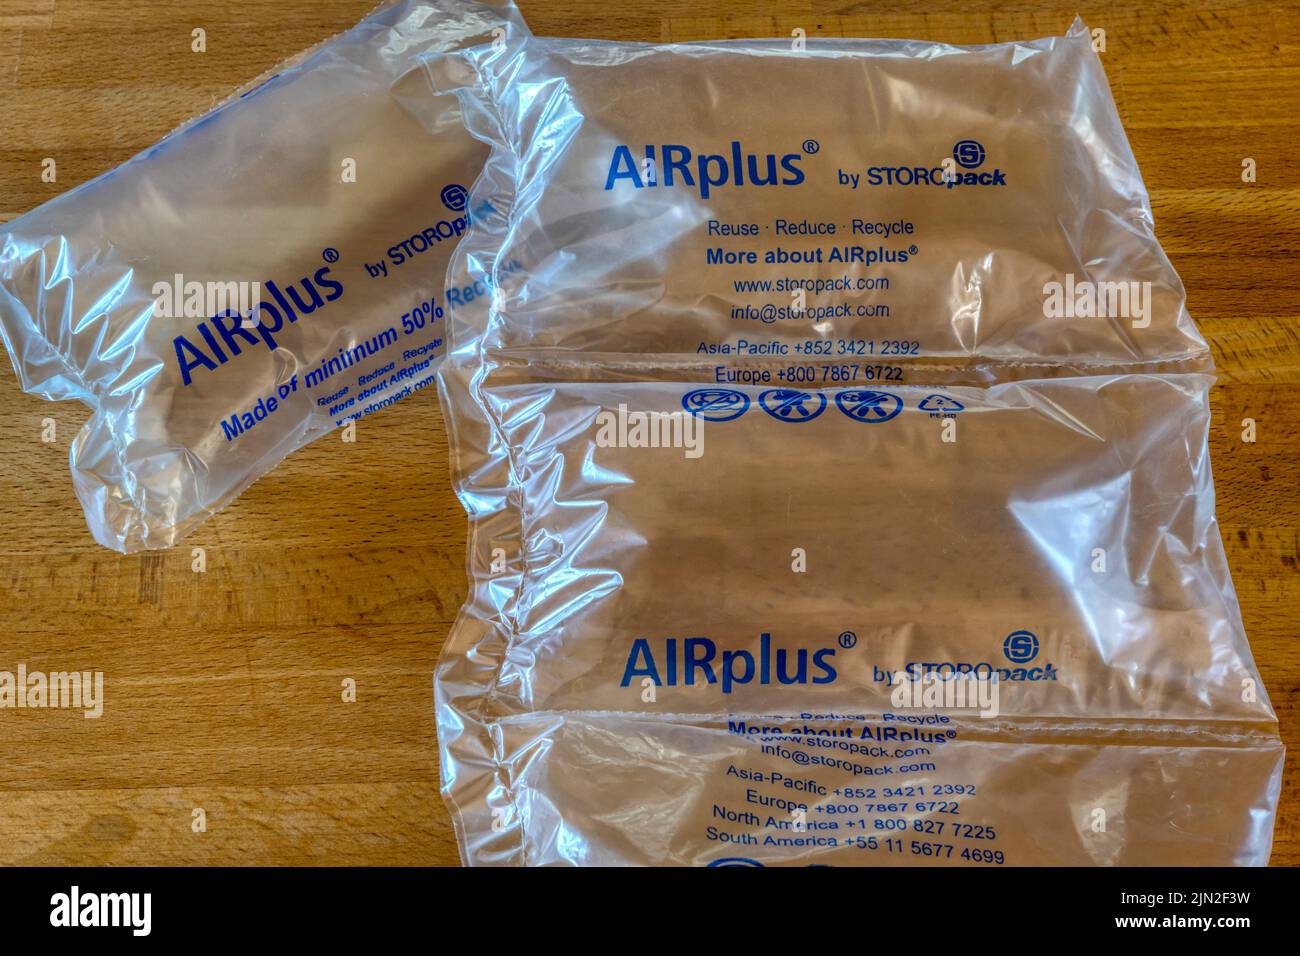 Embalaje Airplus de Storopack. Parcialmente fabricado con plástico reciclado. Foto de stock